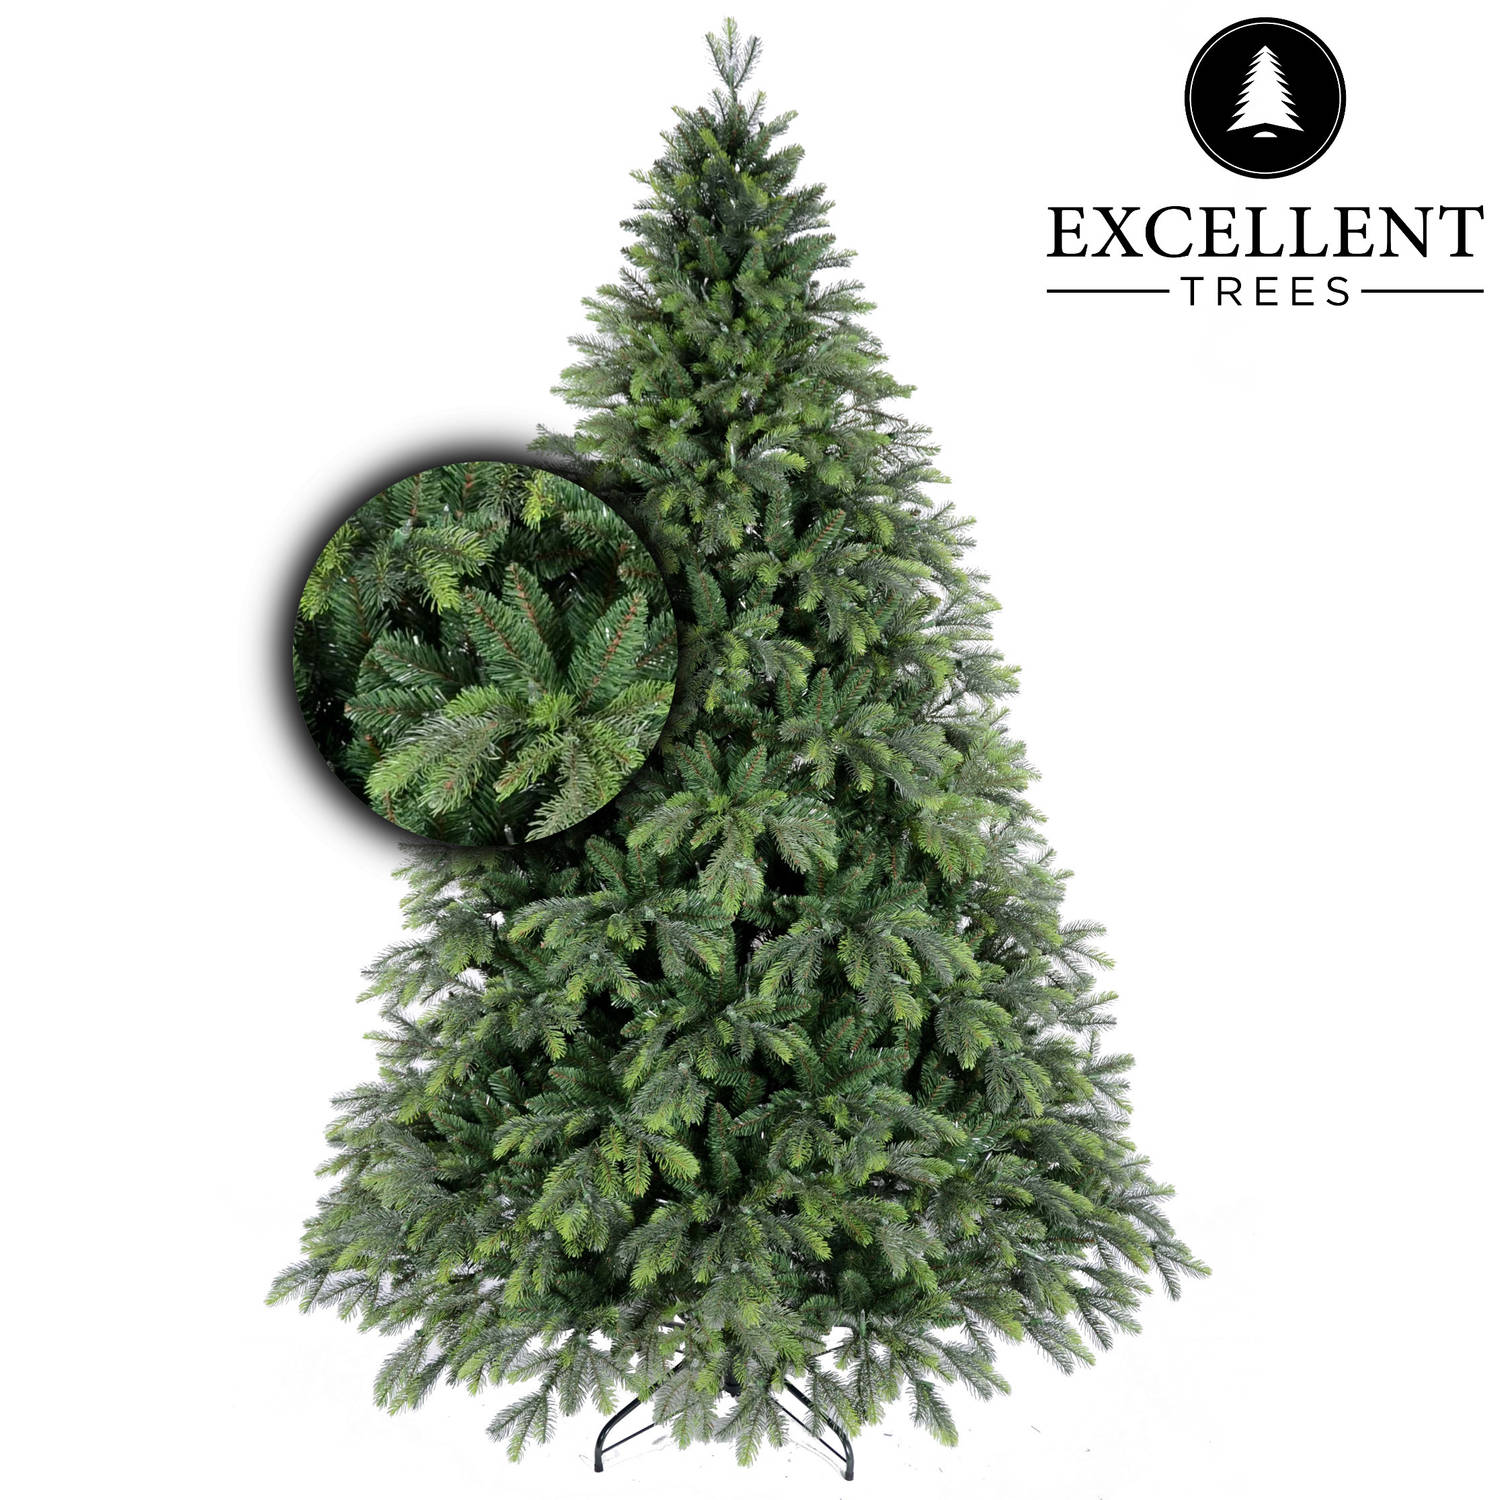 Kerstboom Excellent Trees® Kalmar 180 cm Luxe uitvoering